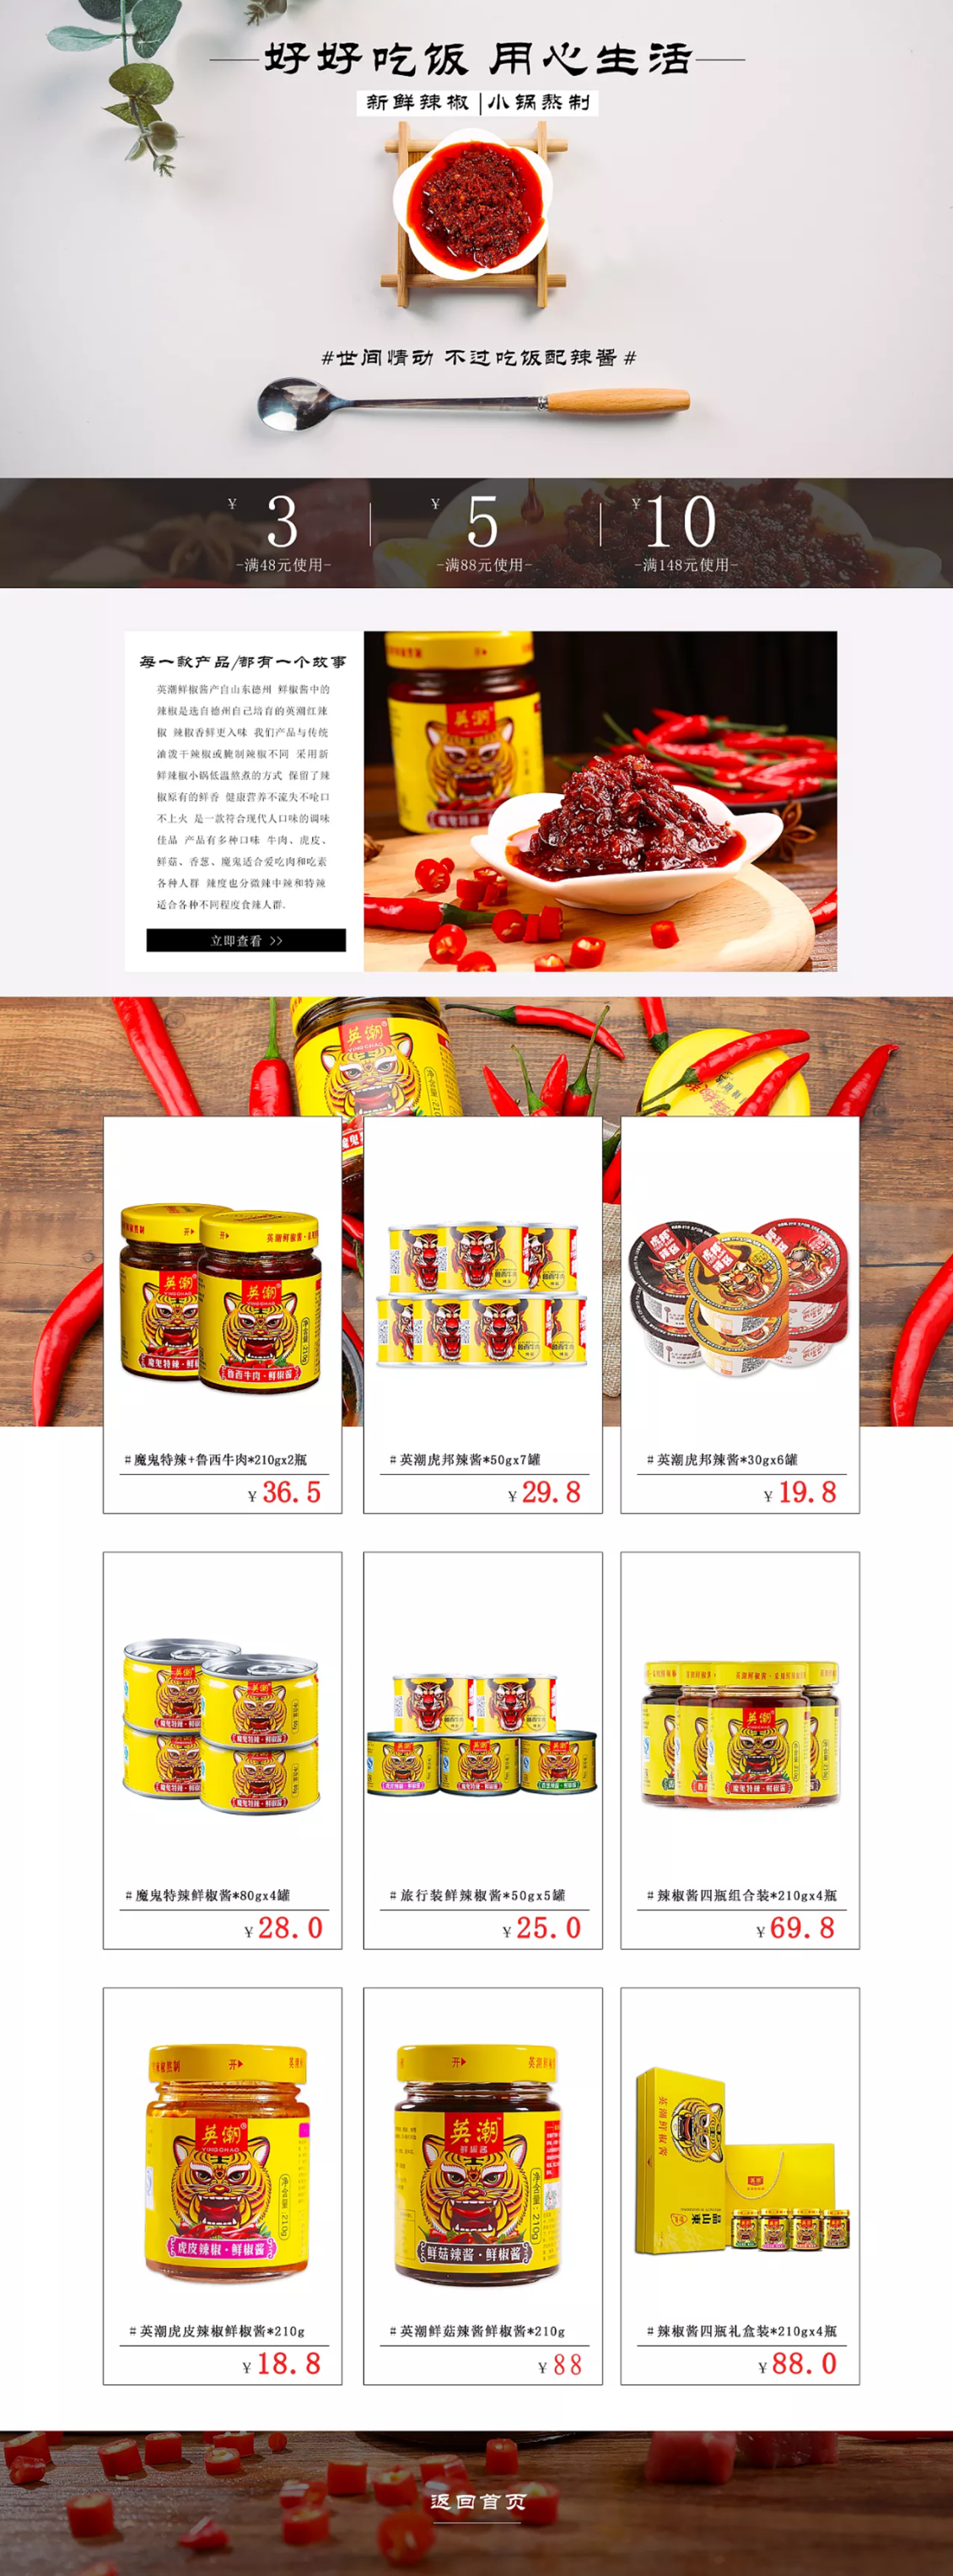 淘宝美工亚丁有机新鲜自制辣椒酱首页设计作品